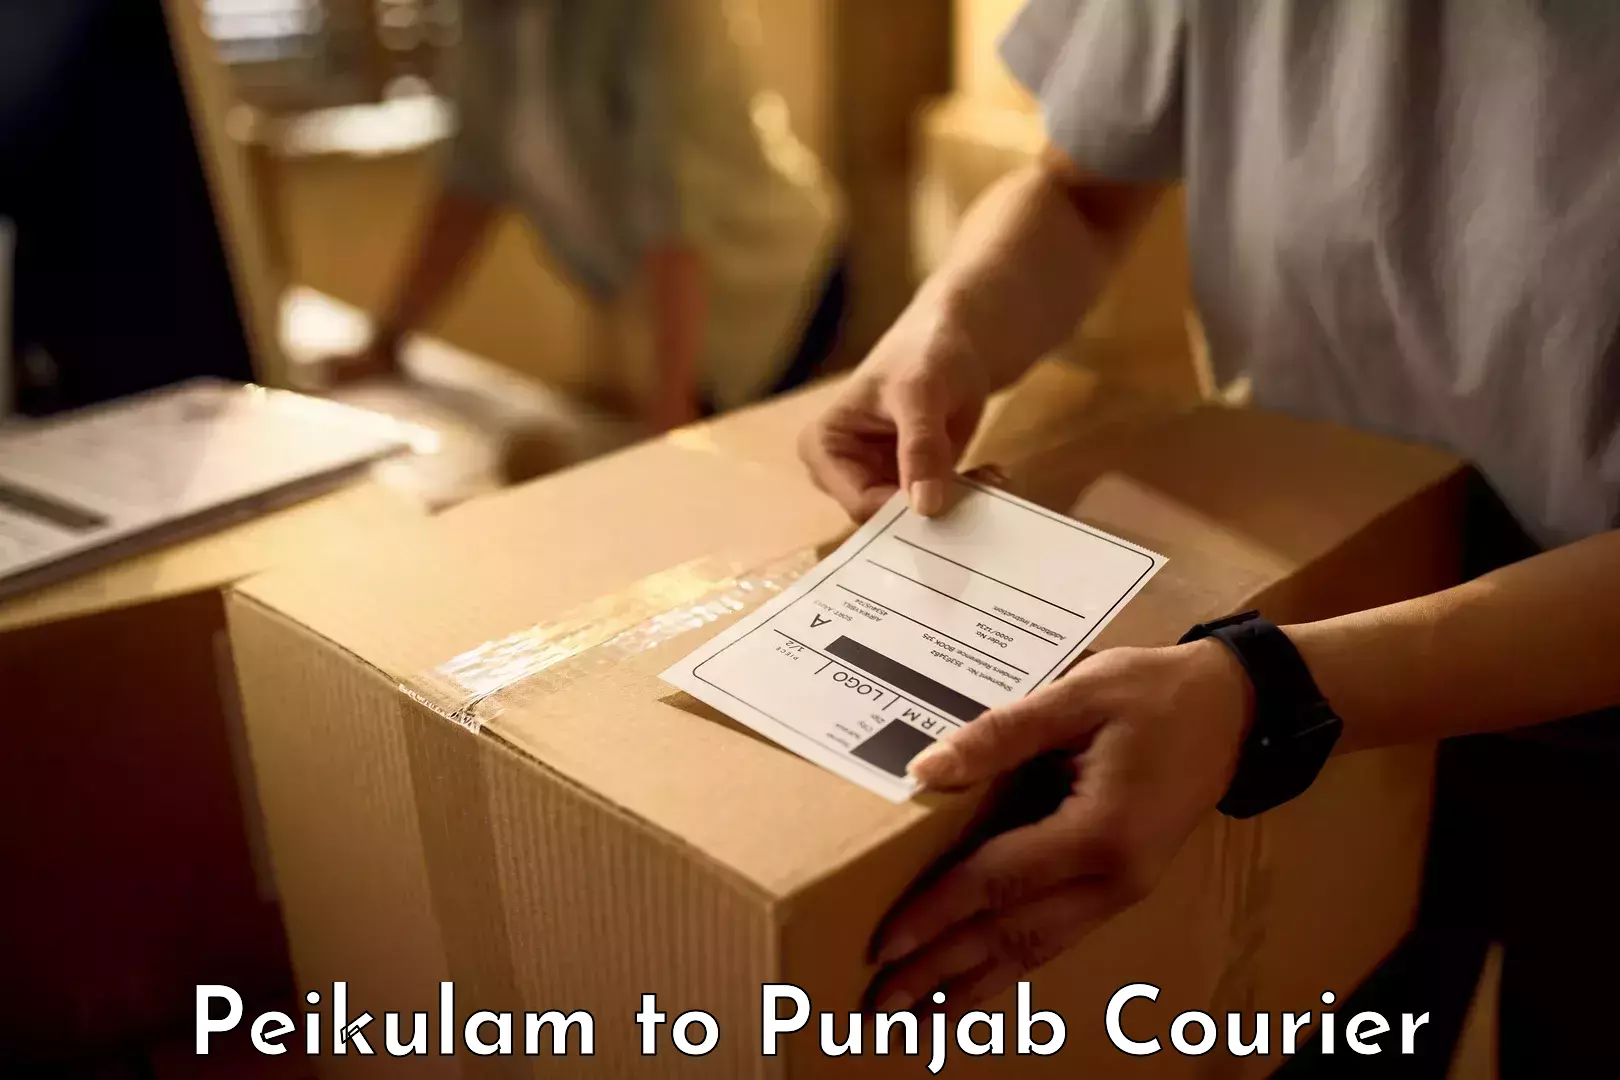 Digital baggage courier Peikulam to Punjab